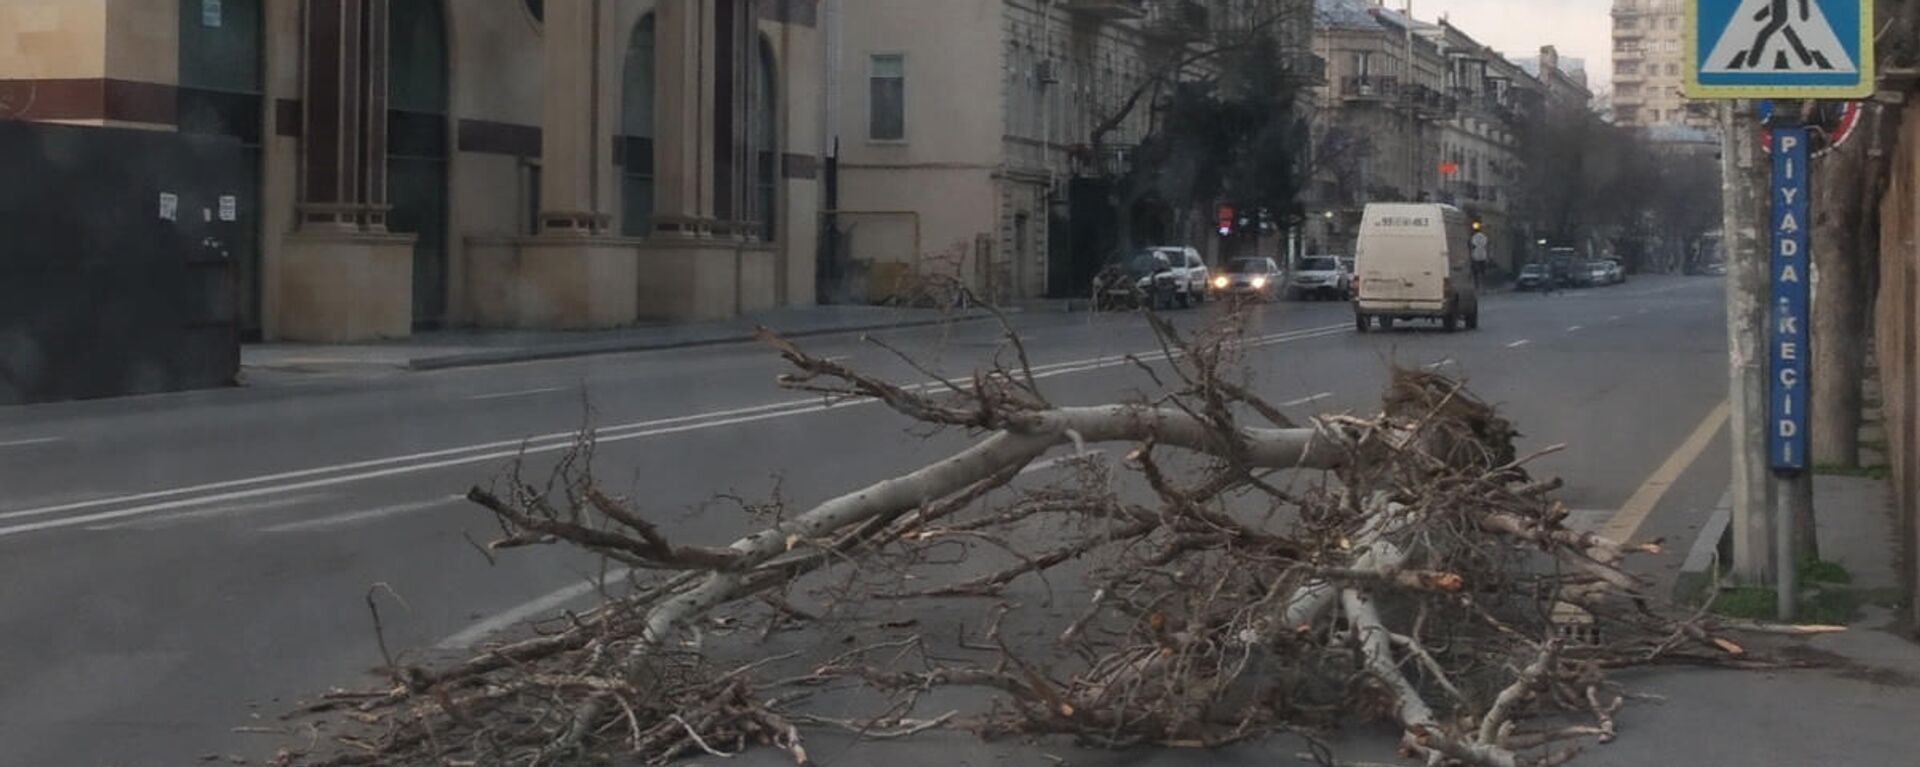 Сильный ветер в Баку повредил деревья - Sputnik Азербайджан, 1920, 24.11.2021